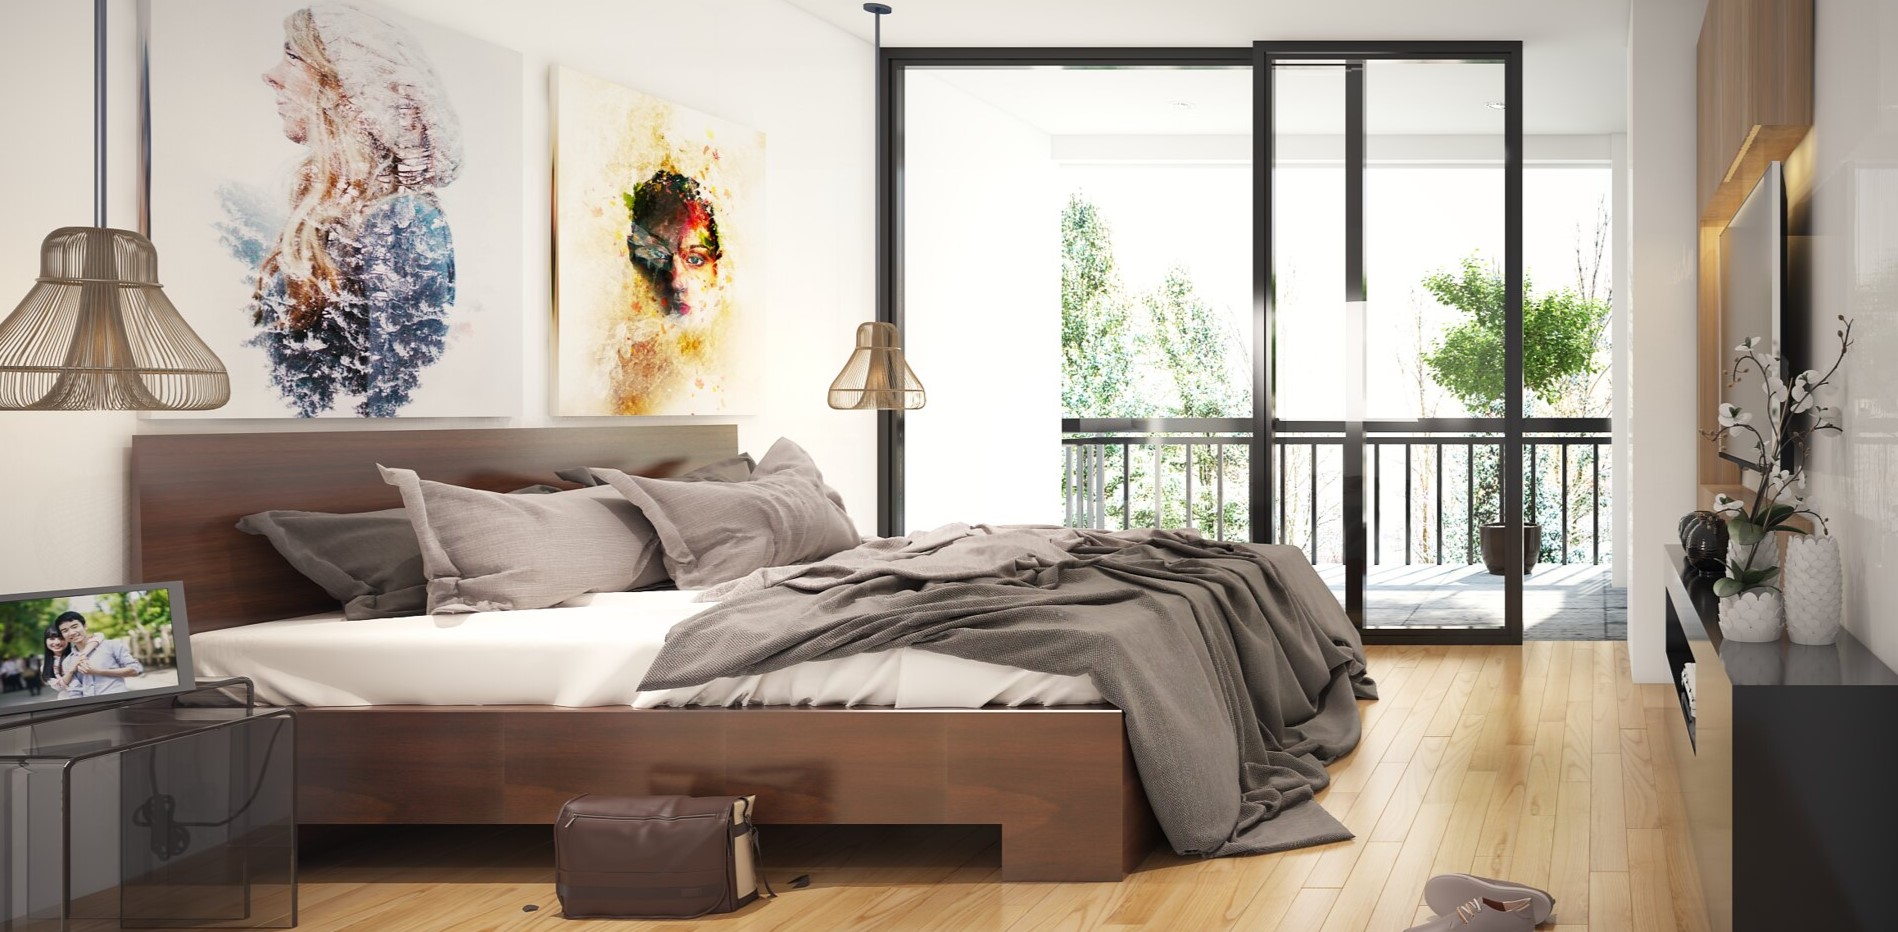 Как правильно расставить мебель в спальне: создание комфортного и функционального интерьера